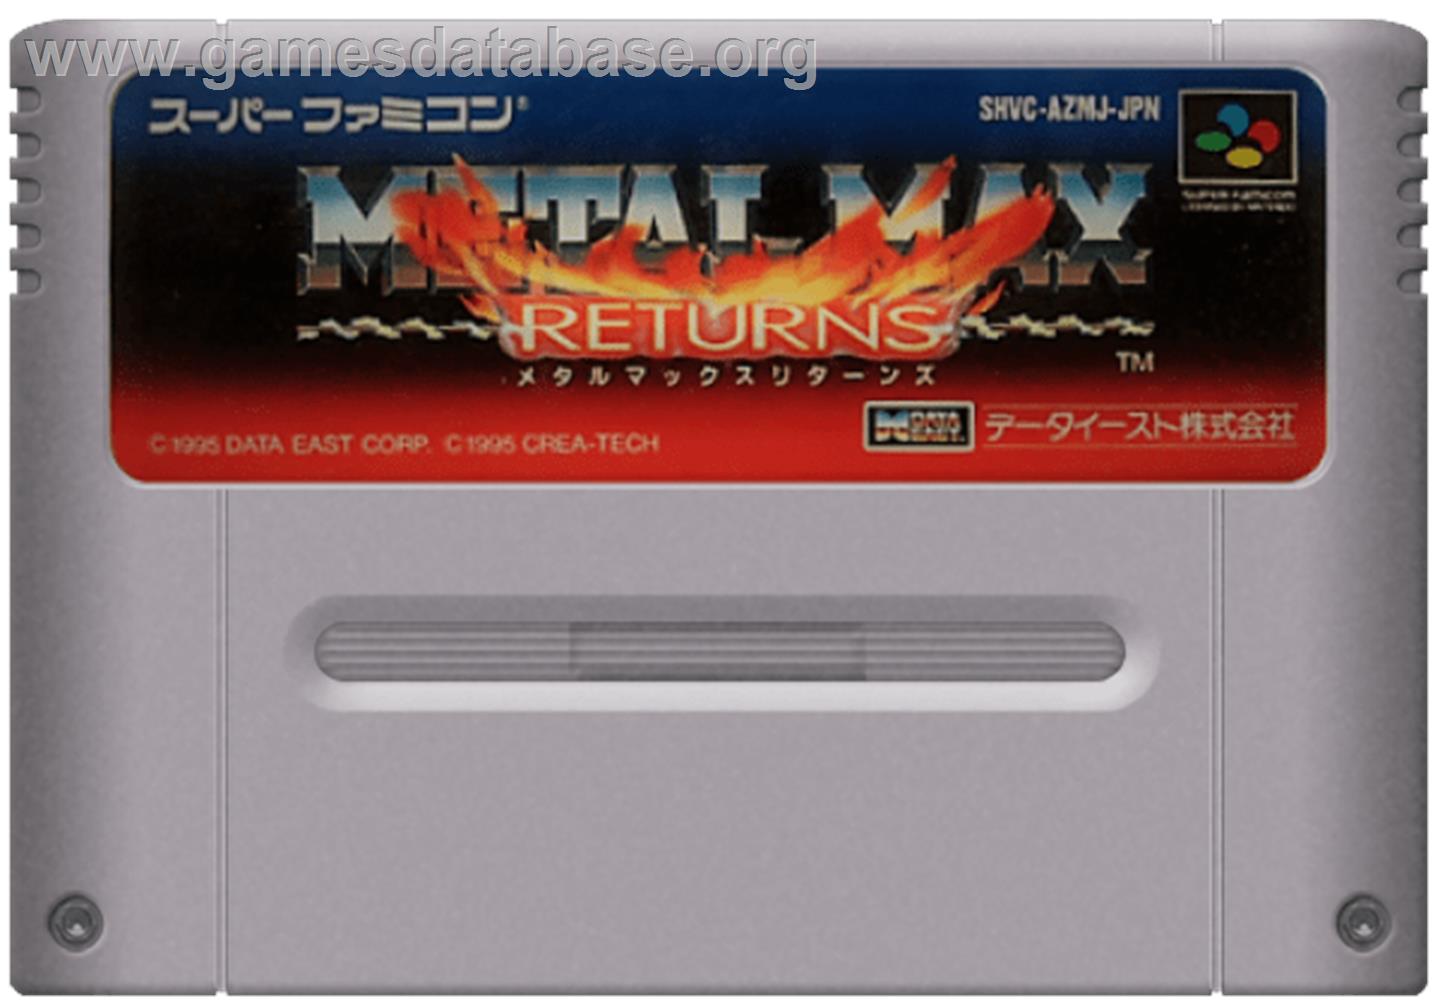 Metal Max Returns - Nintendo SNES - Artwork - Cartridge